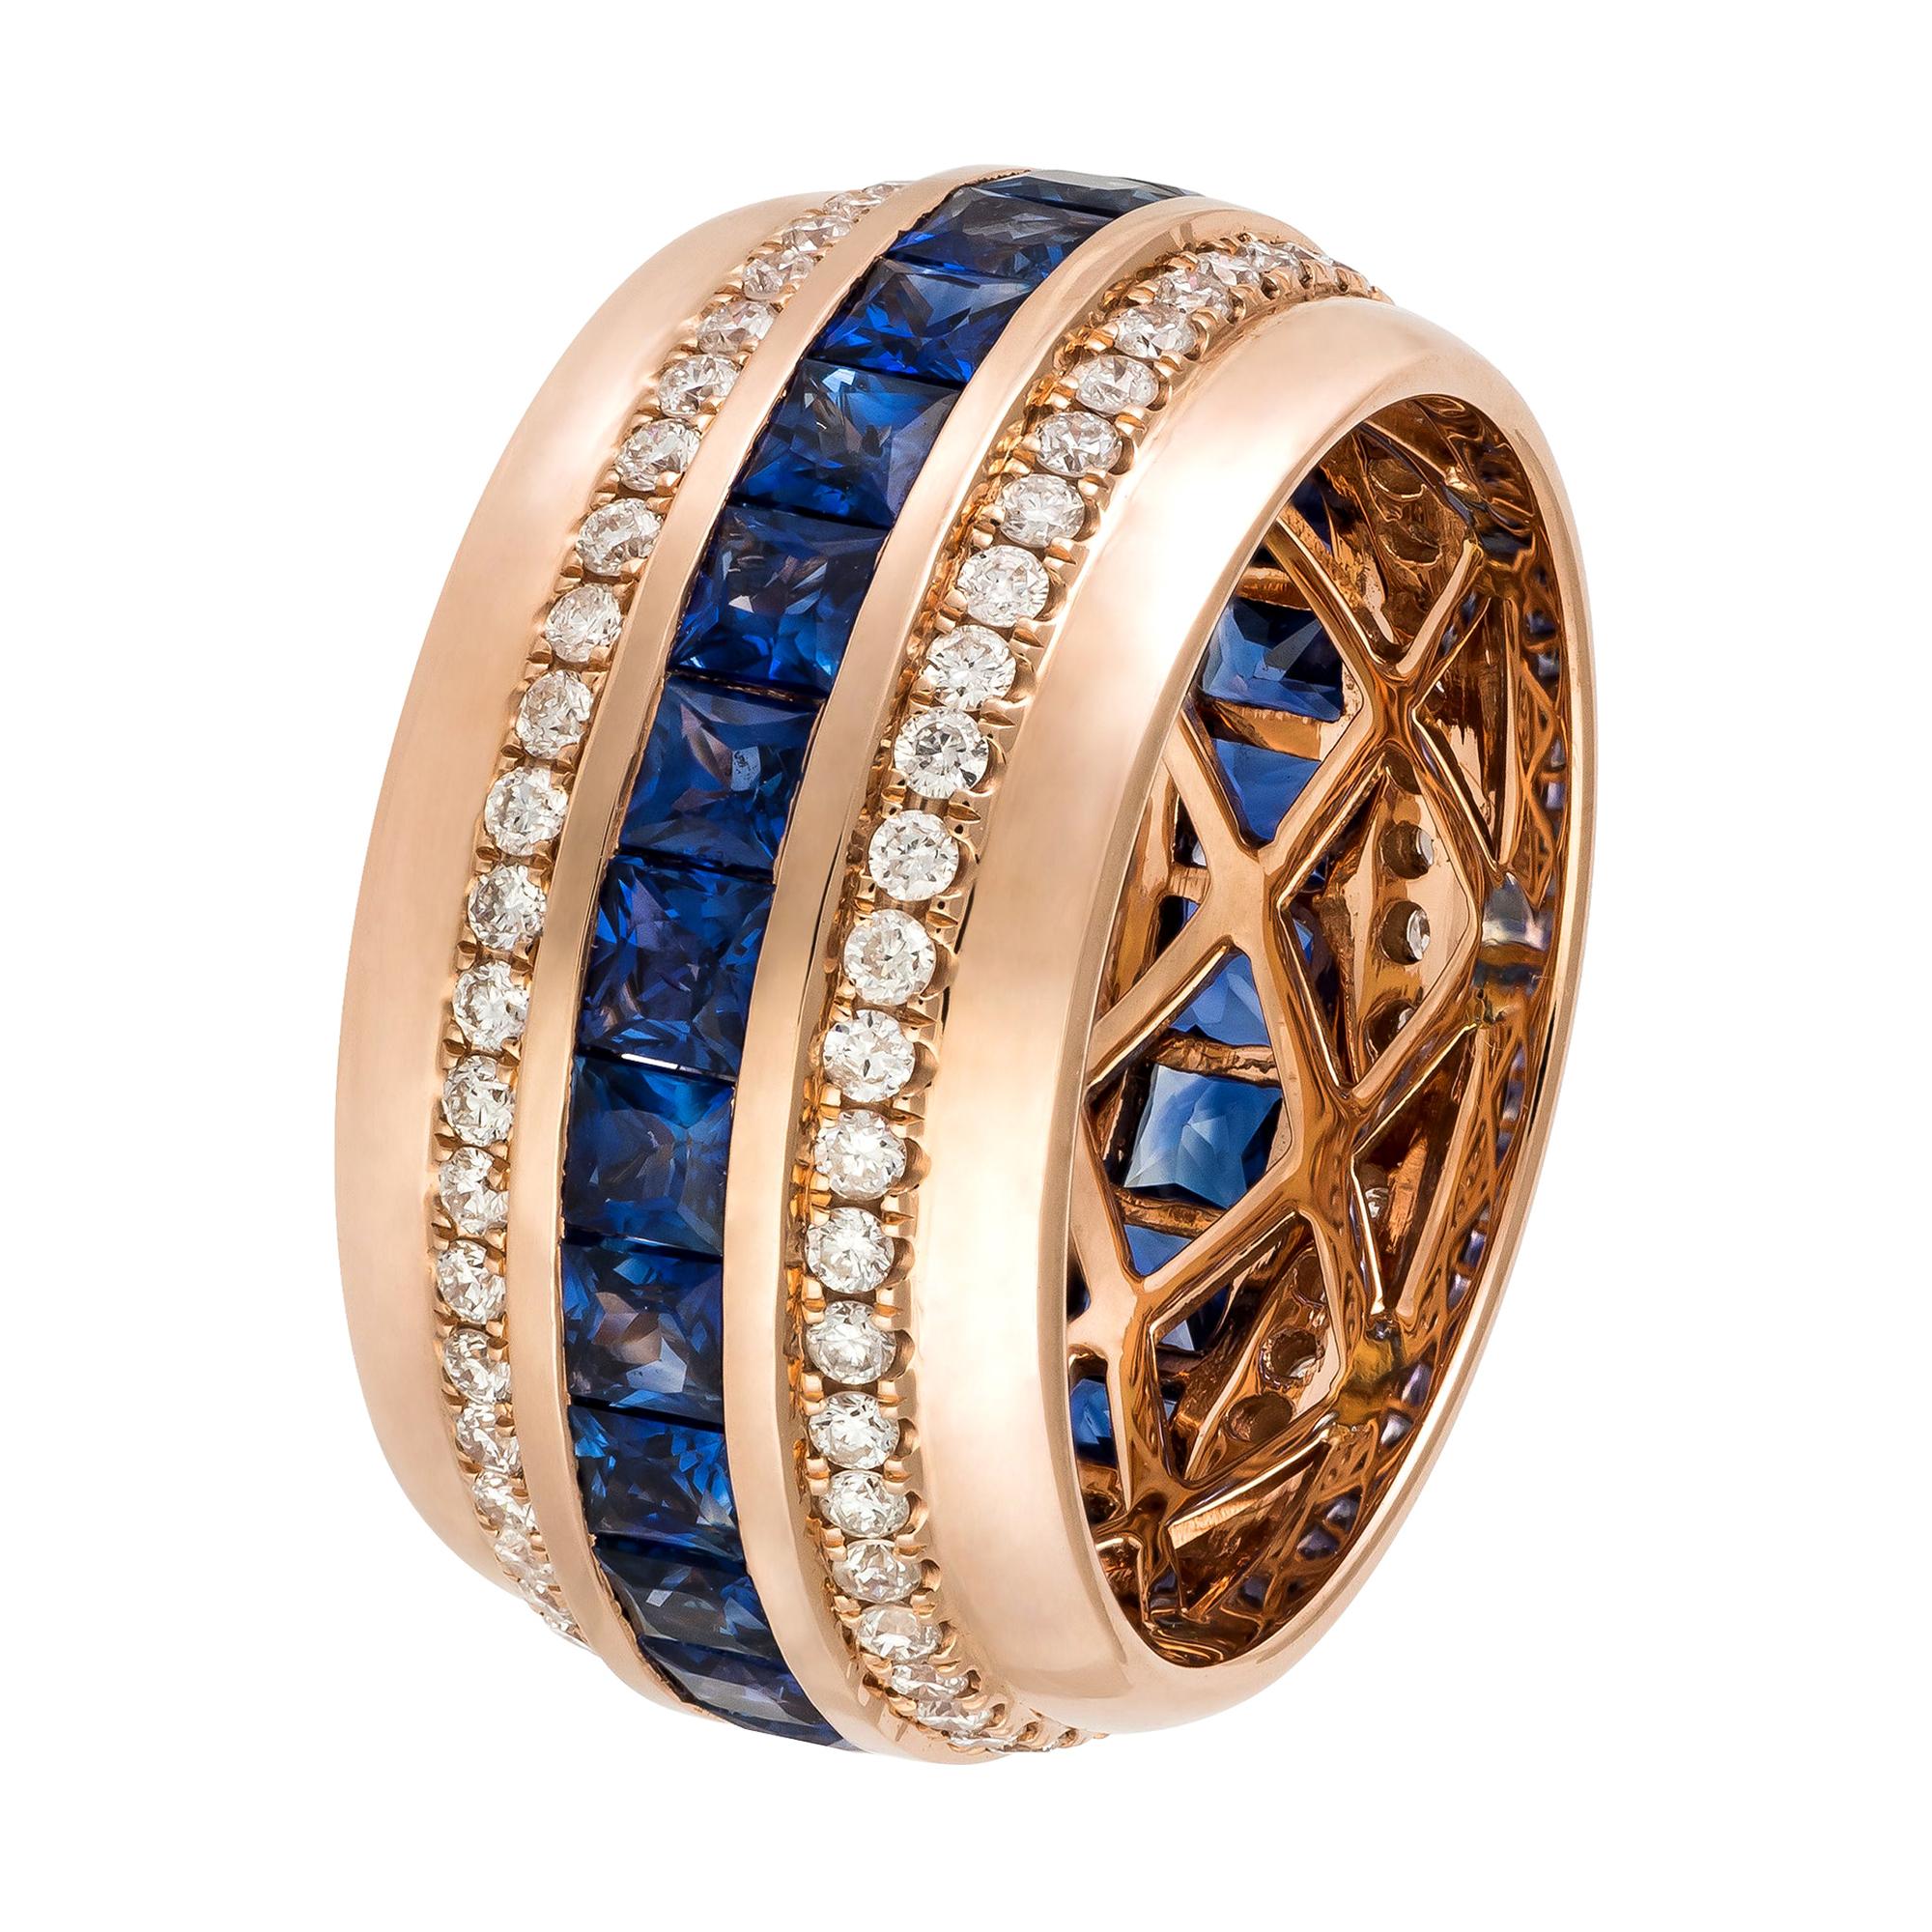 Bague jonc moderne en or rose 18 carats avec saphir bleu et diamants, pour elle